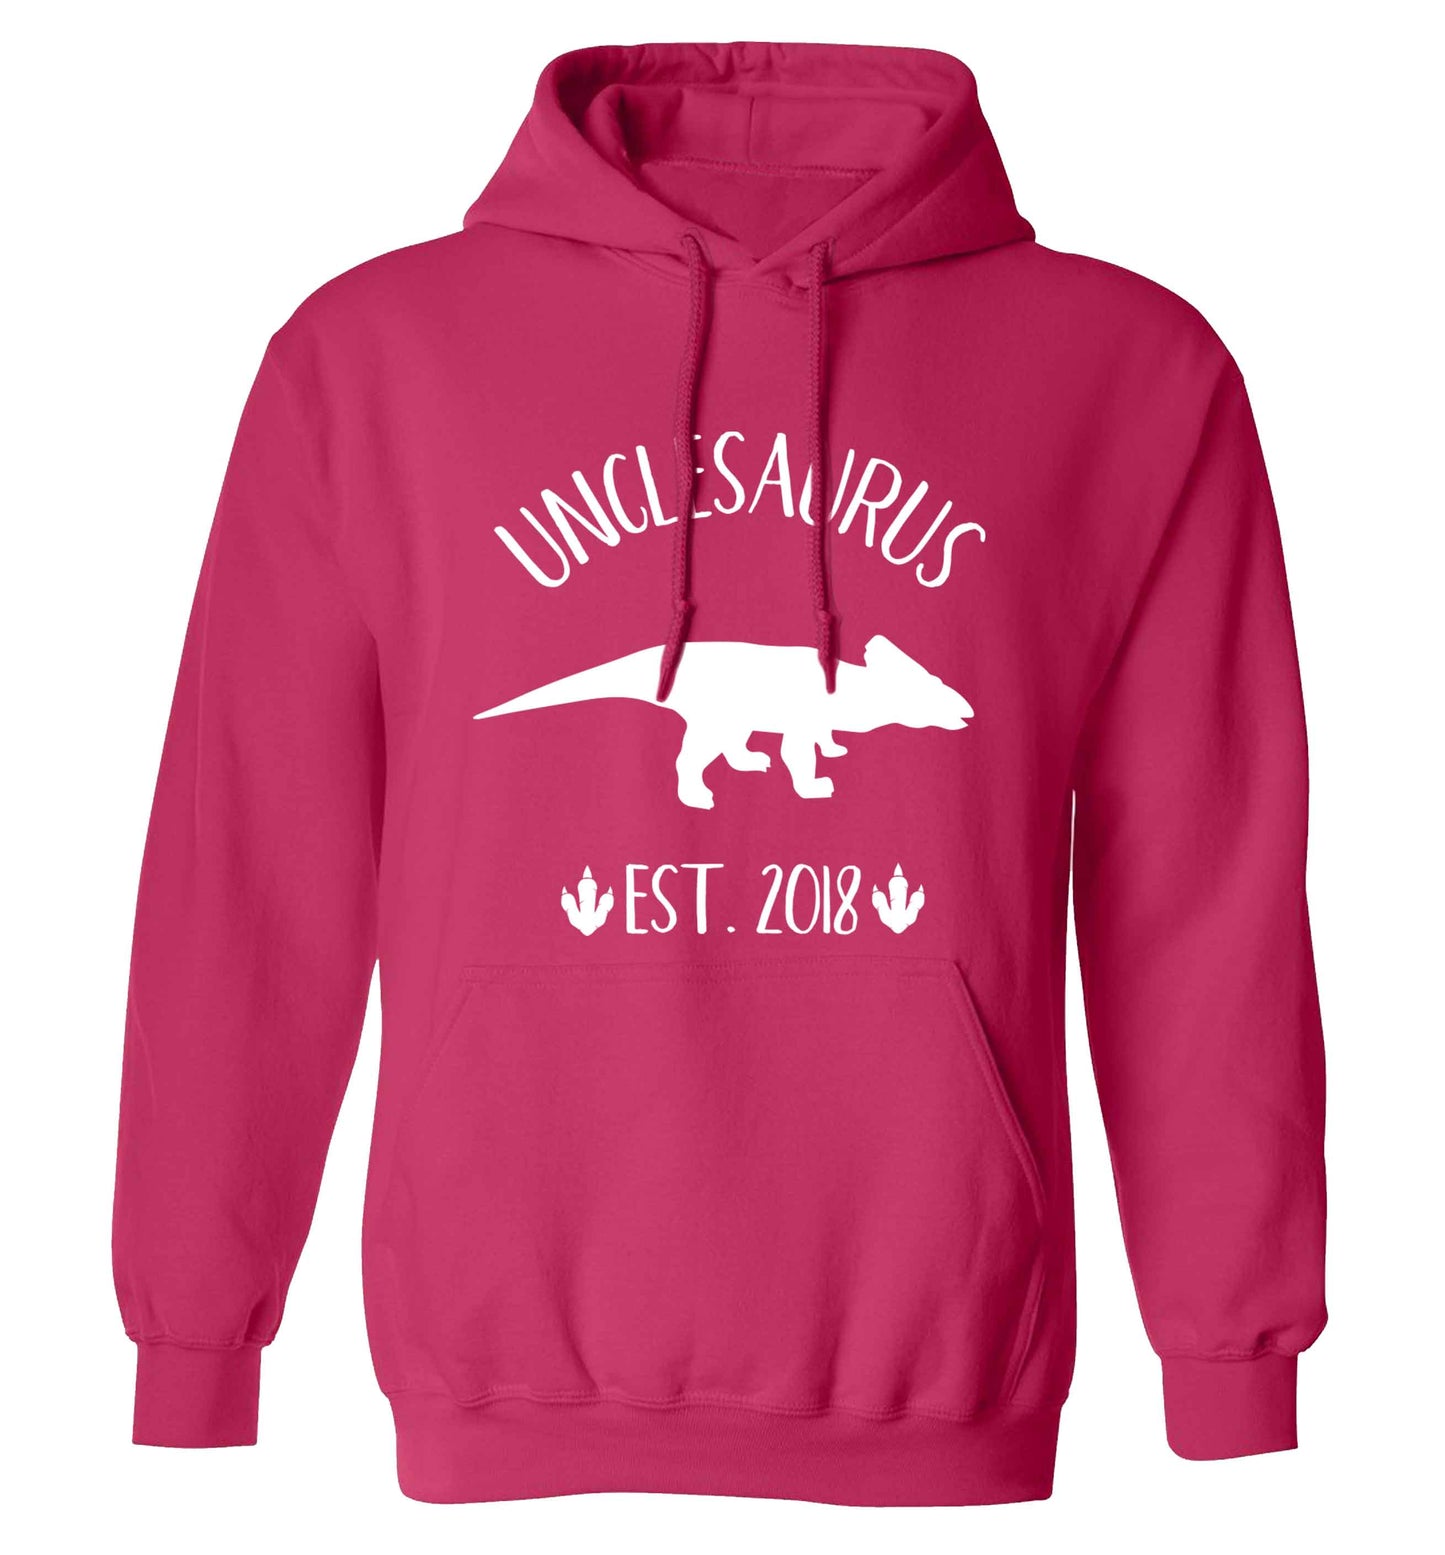 Personalised unclesaurus since (custom date) adults unisex pink hoodie 2XL